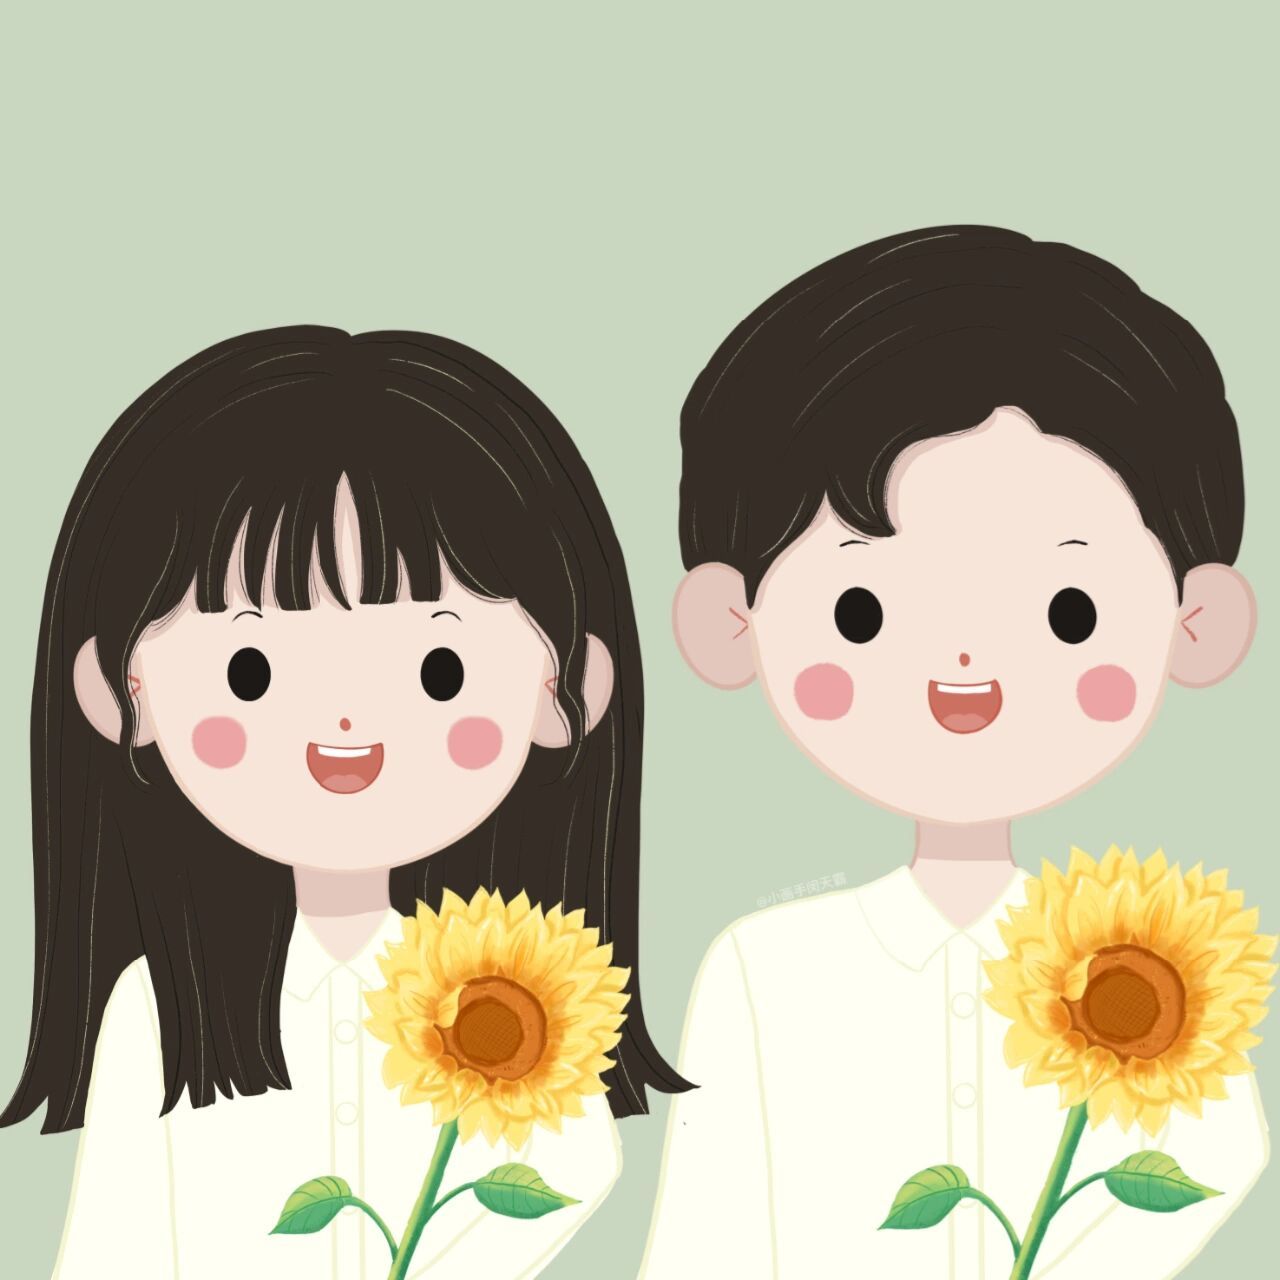 双人情侣头像向日葵图片